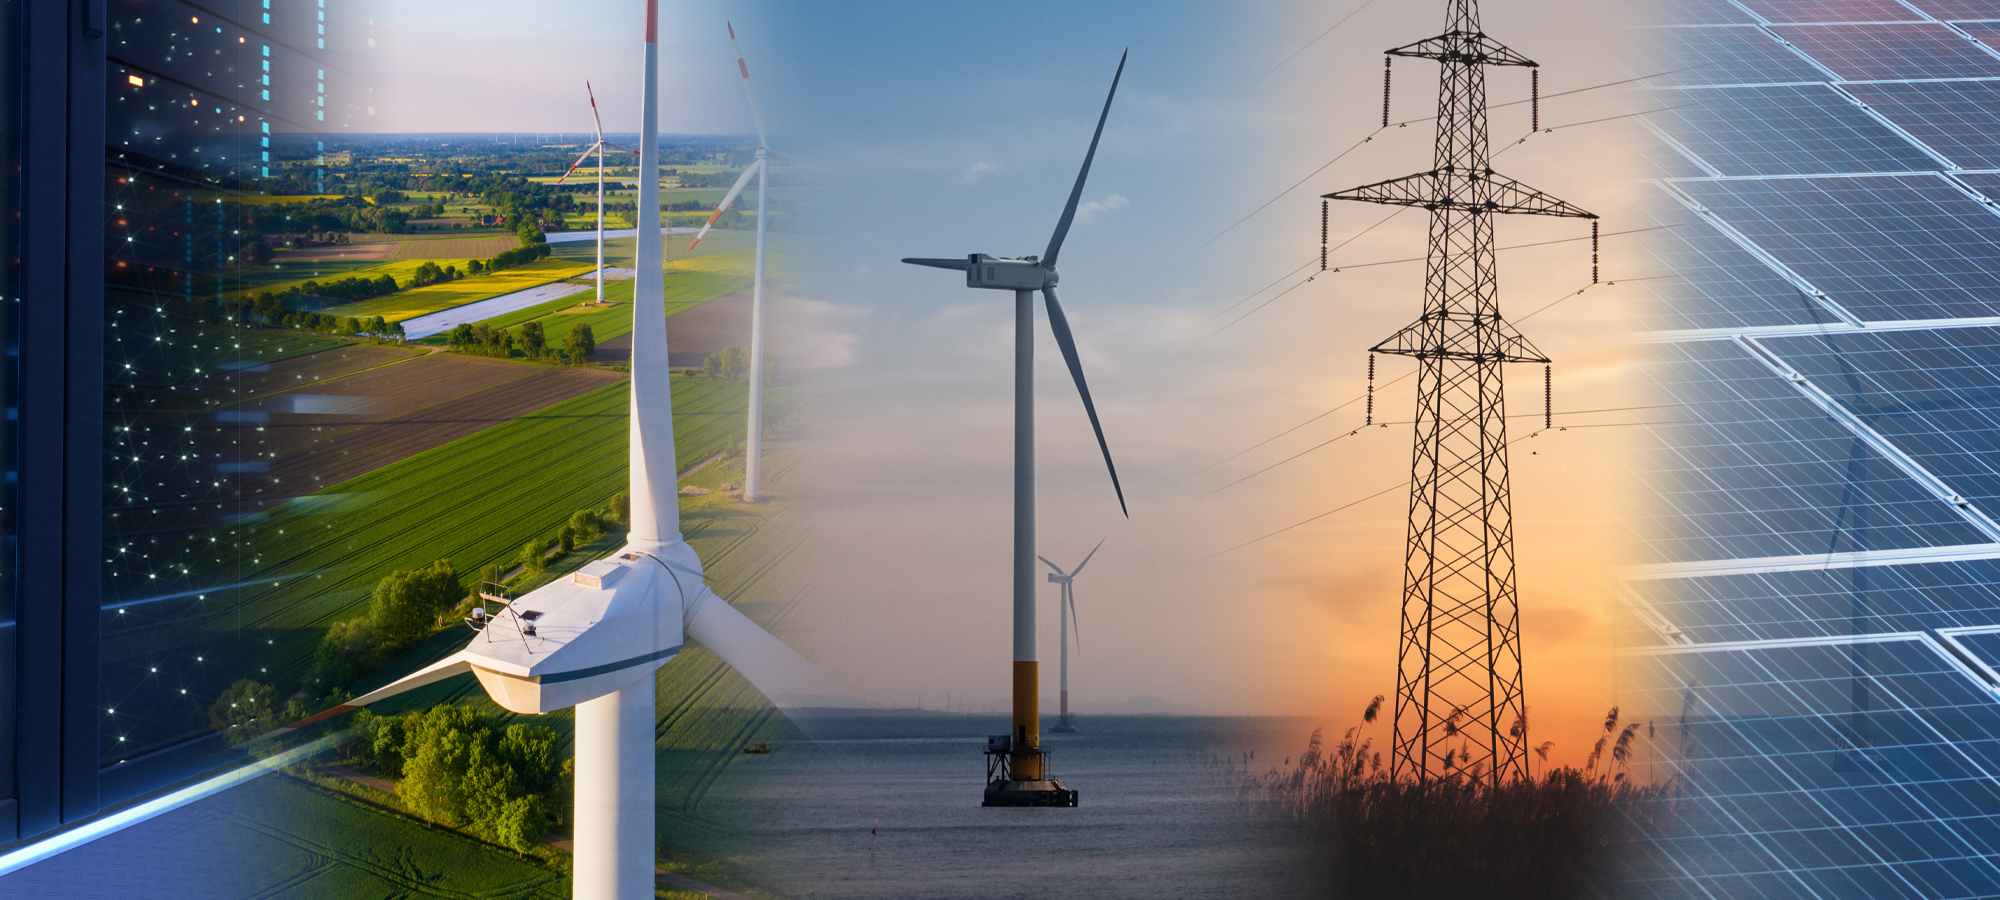 ersg ist die weltweit beste Rekrutierungsagentur für erneuerbare Energien Offshore-Windkraft Onshore-Windenergie Kabel Rechenzentren Bauumgebung Solar